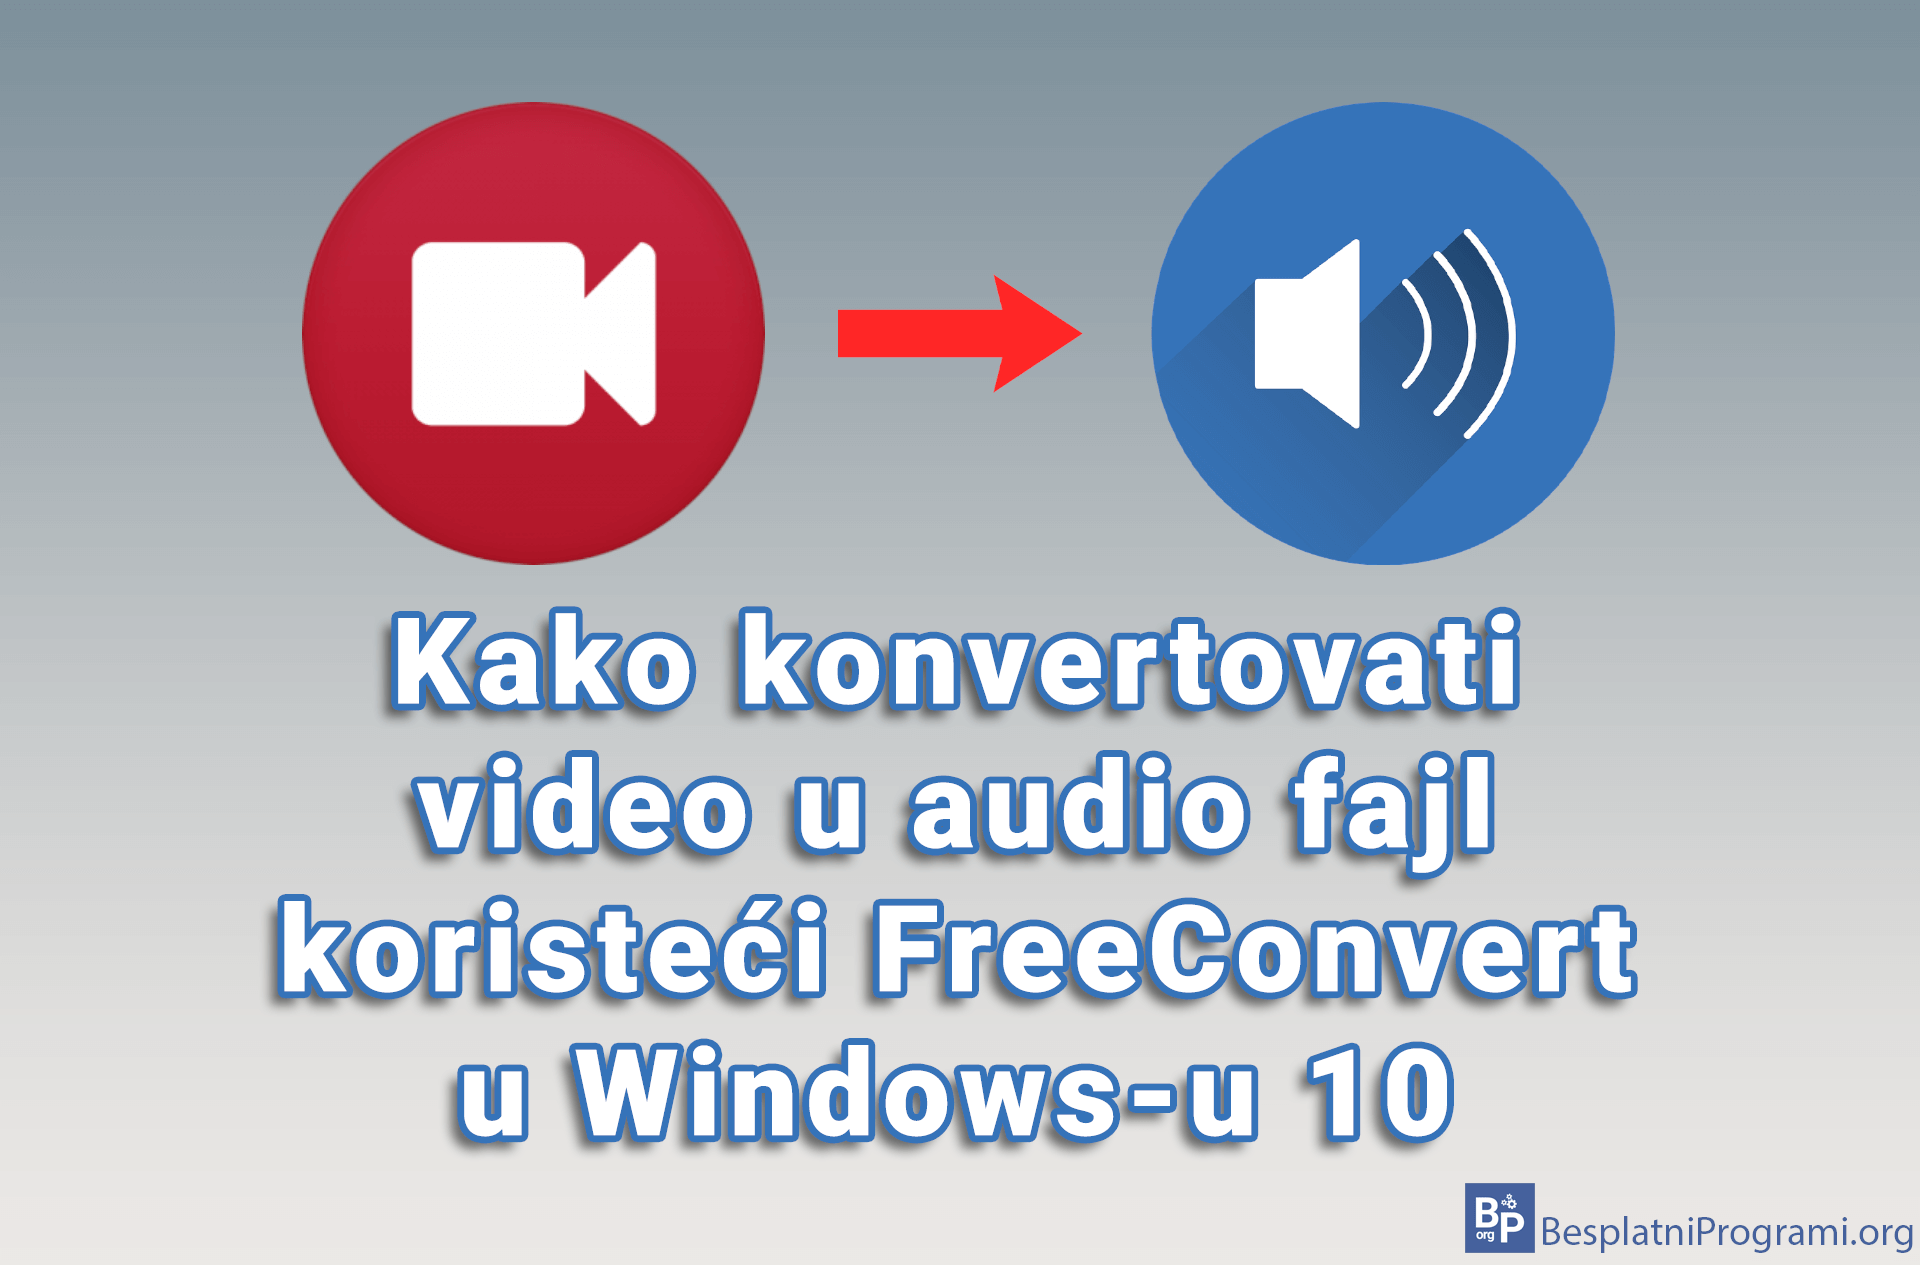 Kako konvertovati video u audio fajl koristeći FreeConvert u Windows-u 10